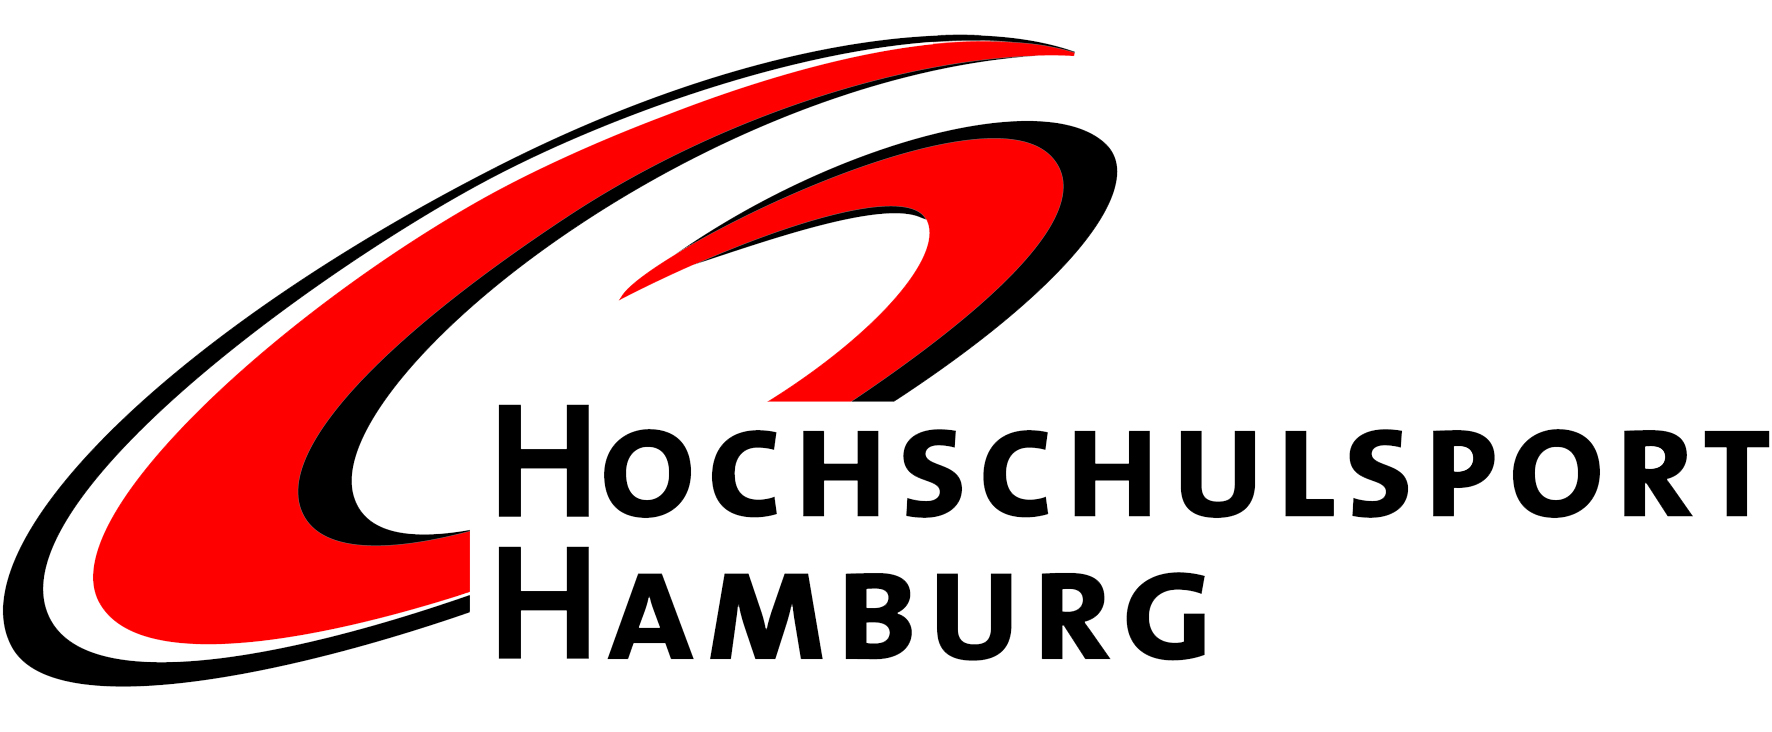 logo-hochschulsport-transparent